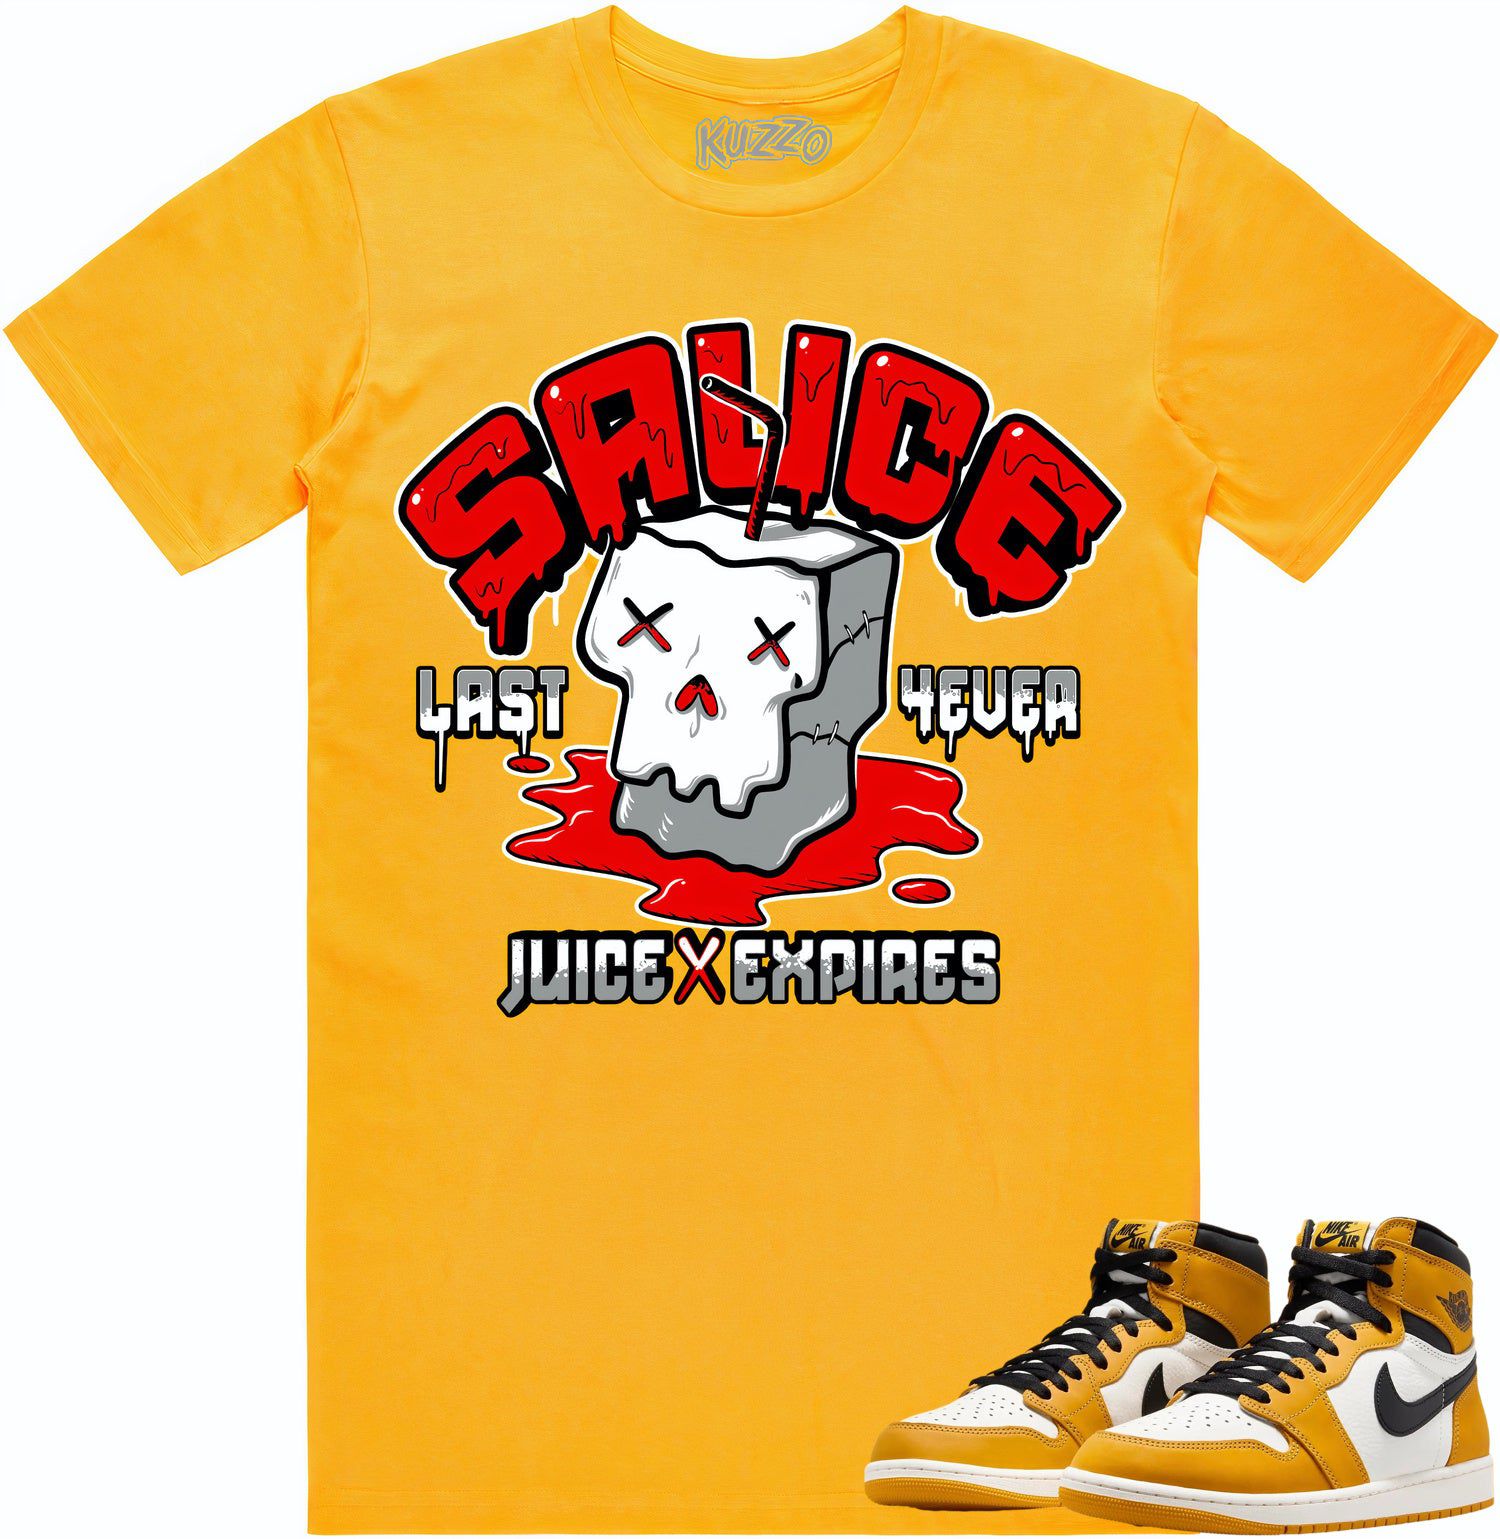 Yellow Ochre 1s Shirt - Jordan Retro 1 Ochre Sneaker Tees - Sauce